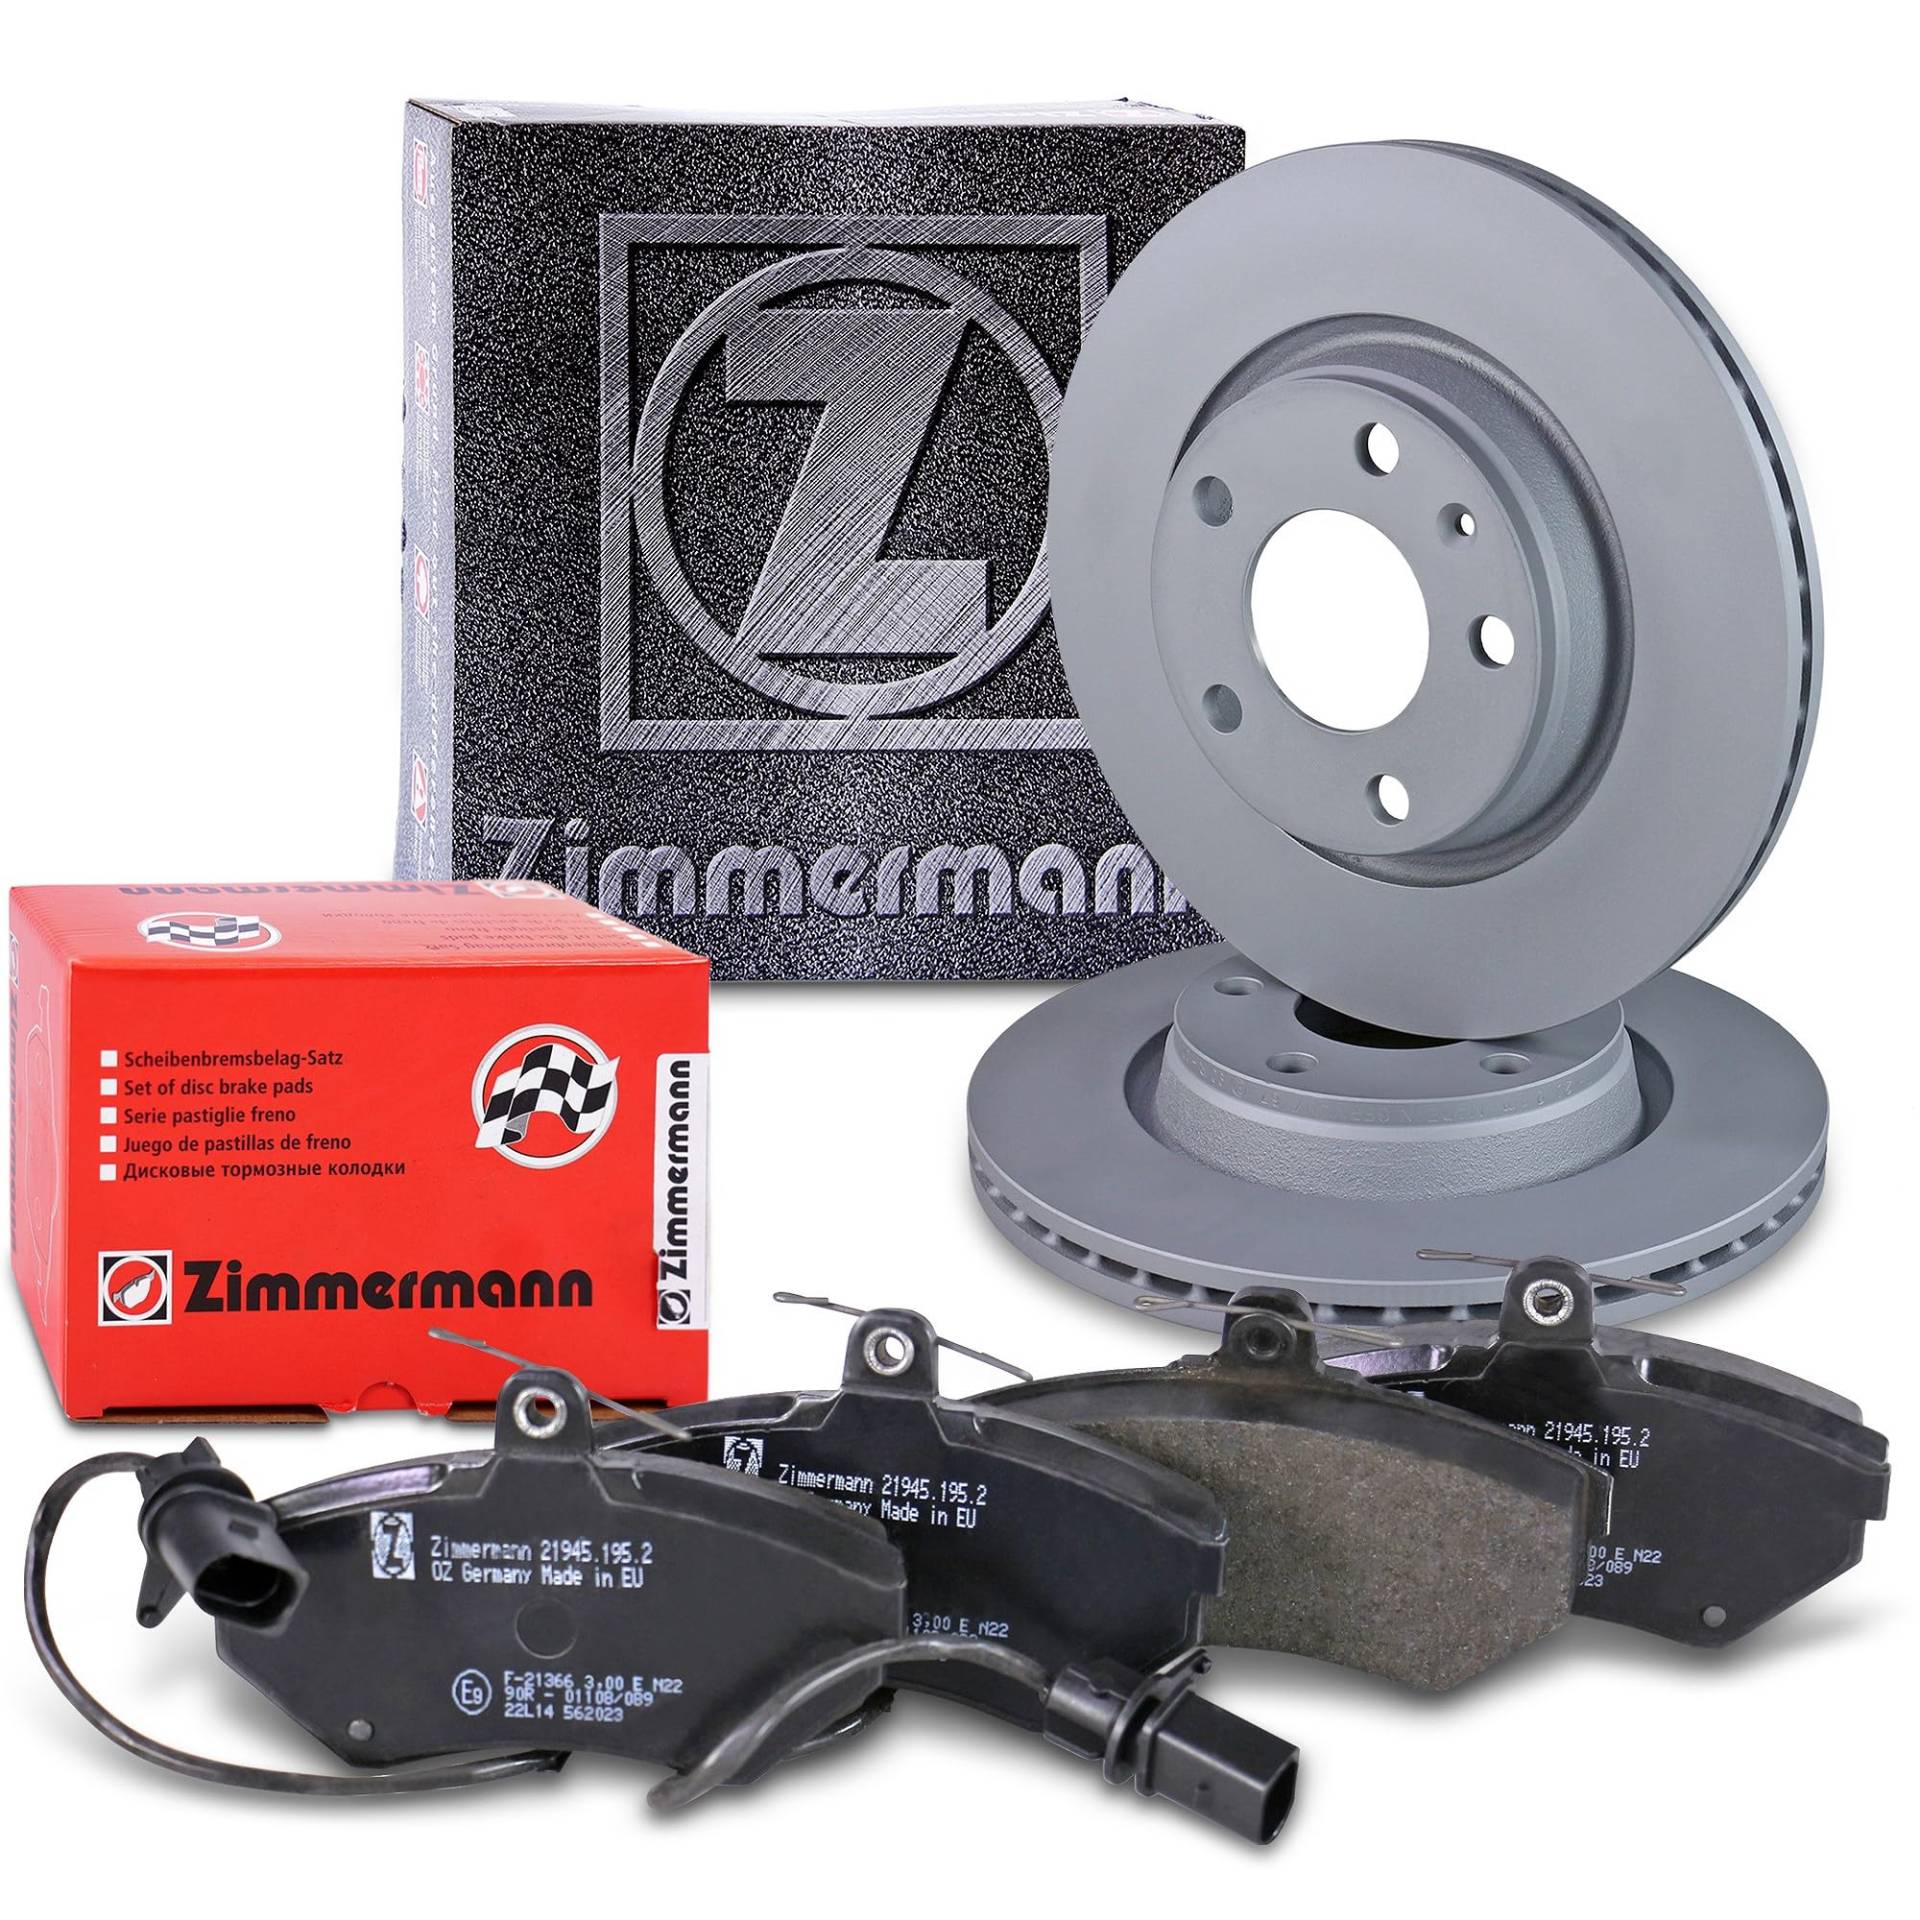 ZIMMERMANN Bremsenset Vorderachse inkl. Bremsscheiben Belüftet Ø 280 mm + Bremsbeläge vorne AUDI A4 B5 (8D2) (8D5),A4 B6 (8E2) (8E5),A4 B7 (8EC)(8ED);SEAT EXEO (3R2) (3R5);VW PASSAT B5 (3B2) (3B5) von Zimmermann